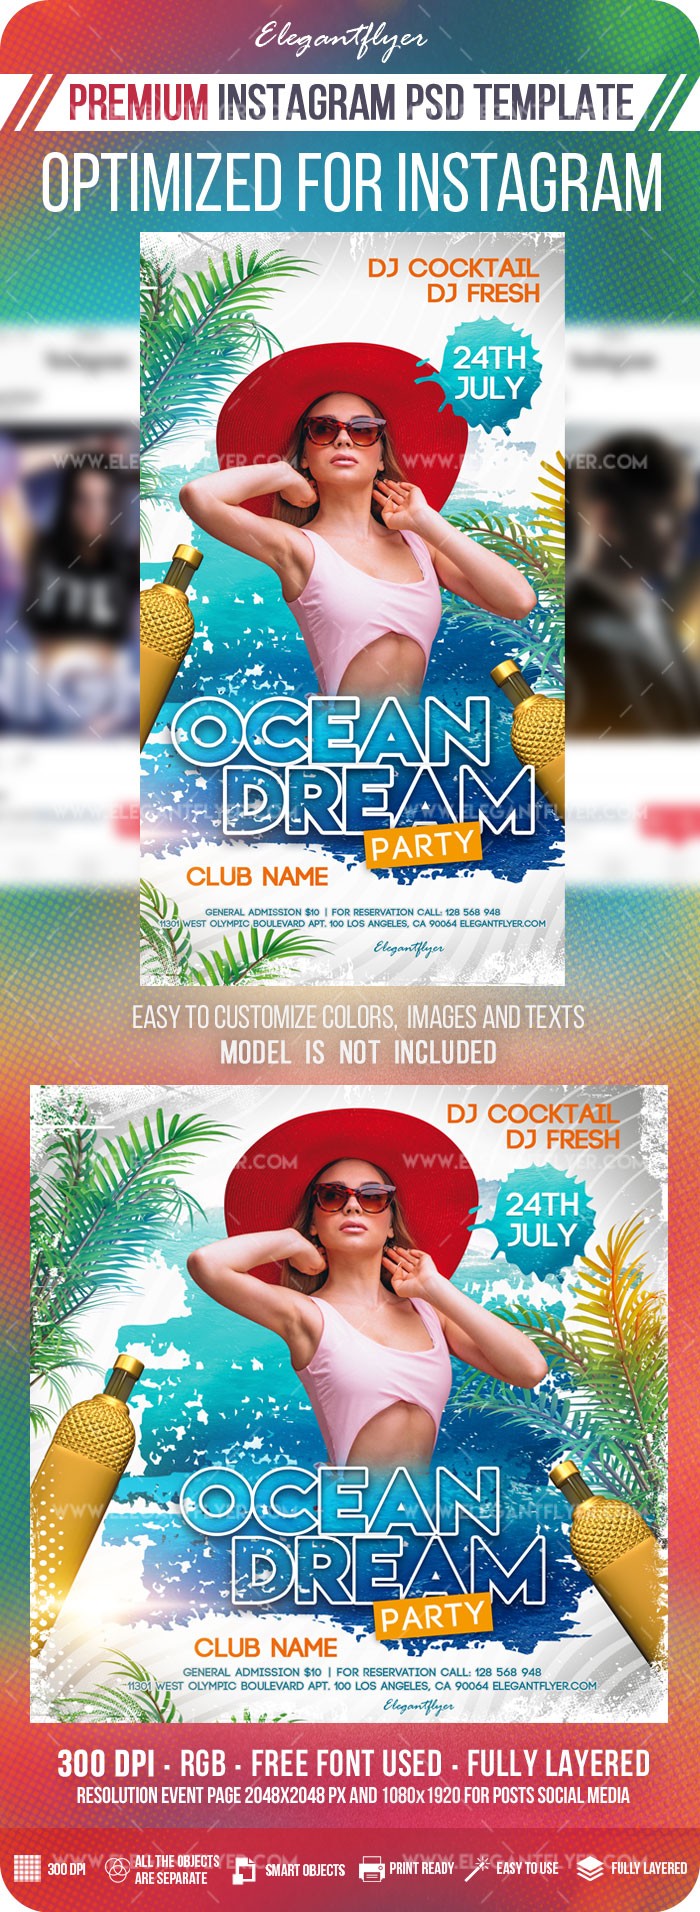 Ocean Dream Instagram -> Instagram Ocean Dream by ElegantFlyer